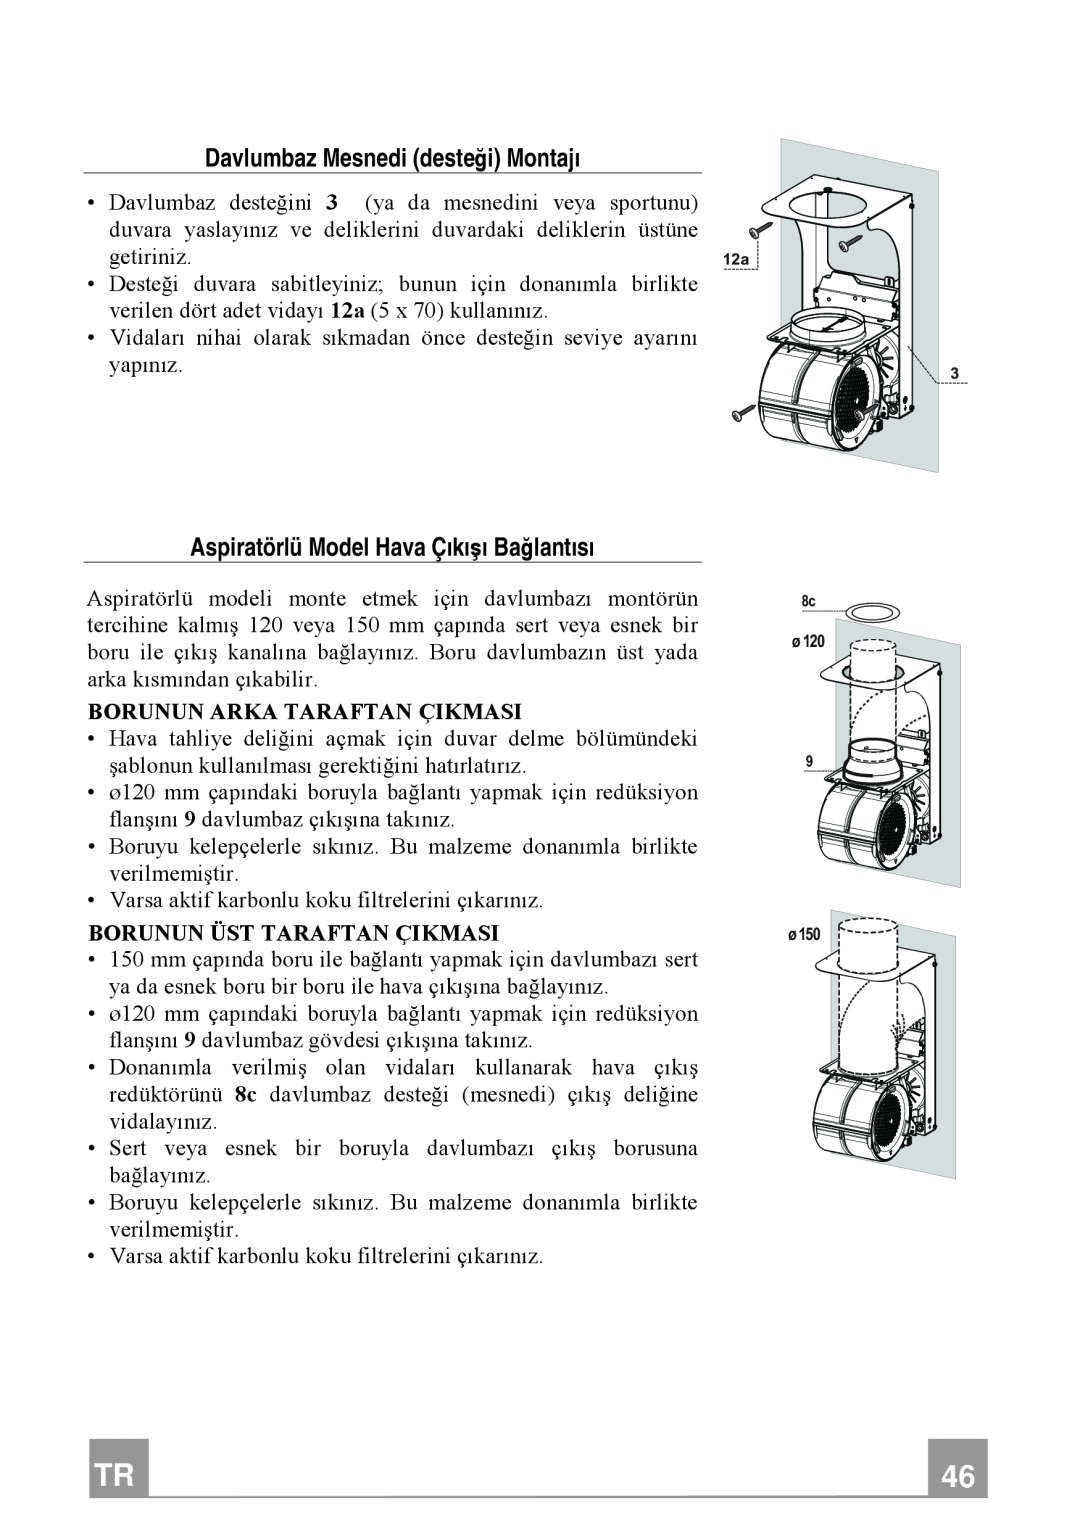 Franke Consumer Products FTU 3807 W manual Davlumbaz Mesnedi desteği Montajı, Aspiratörlü Model Hava Çıkışı Bağlantısı 